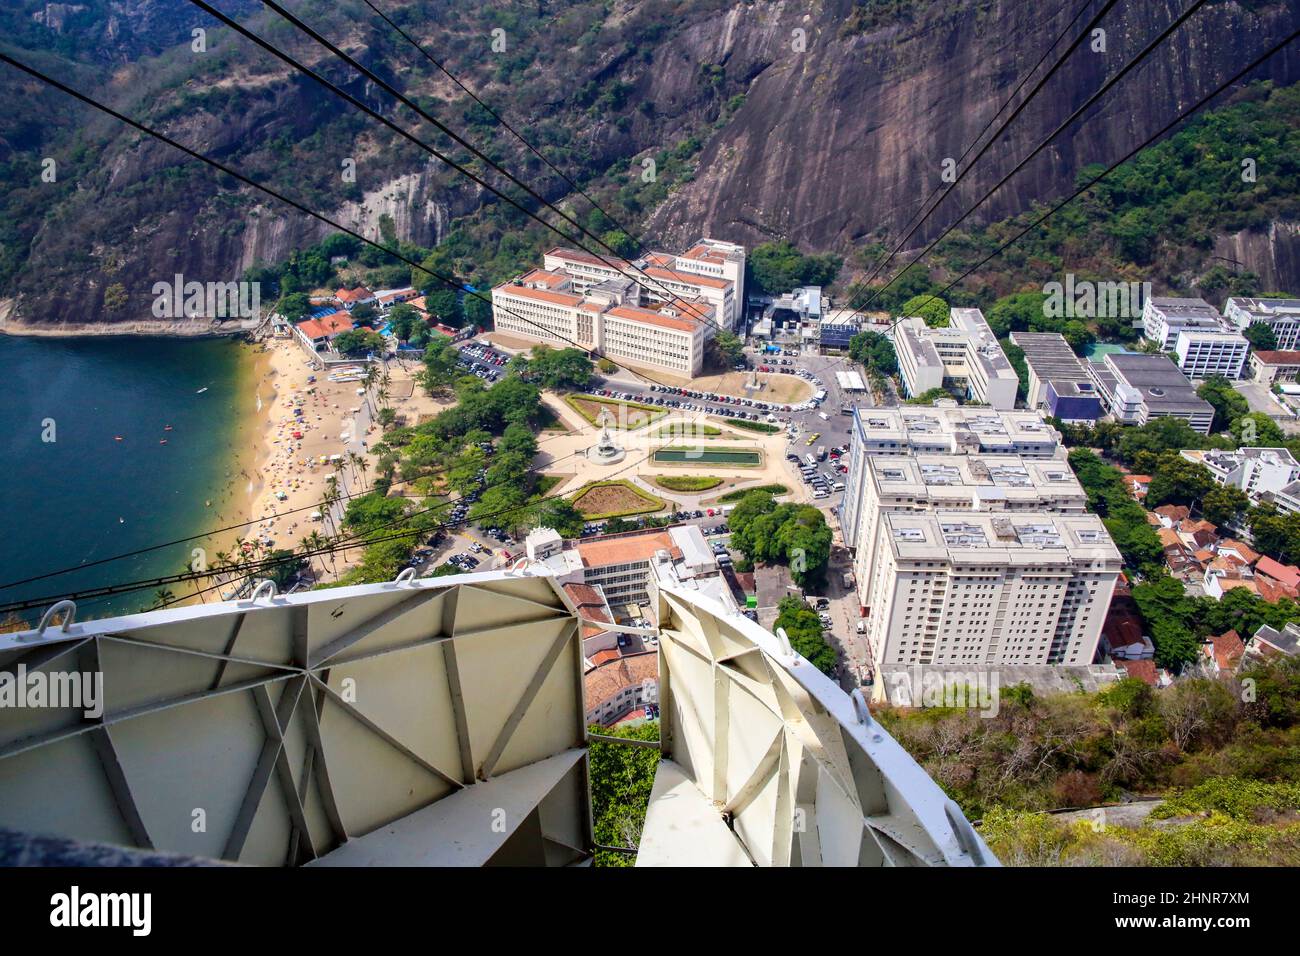 Overhead cable car over Sugarloaf Mountain, Rio De Janeiro, Brazil. Stock Photo